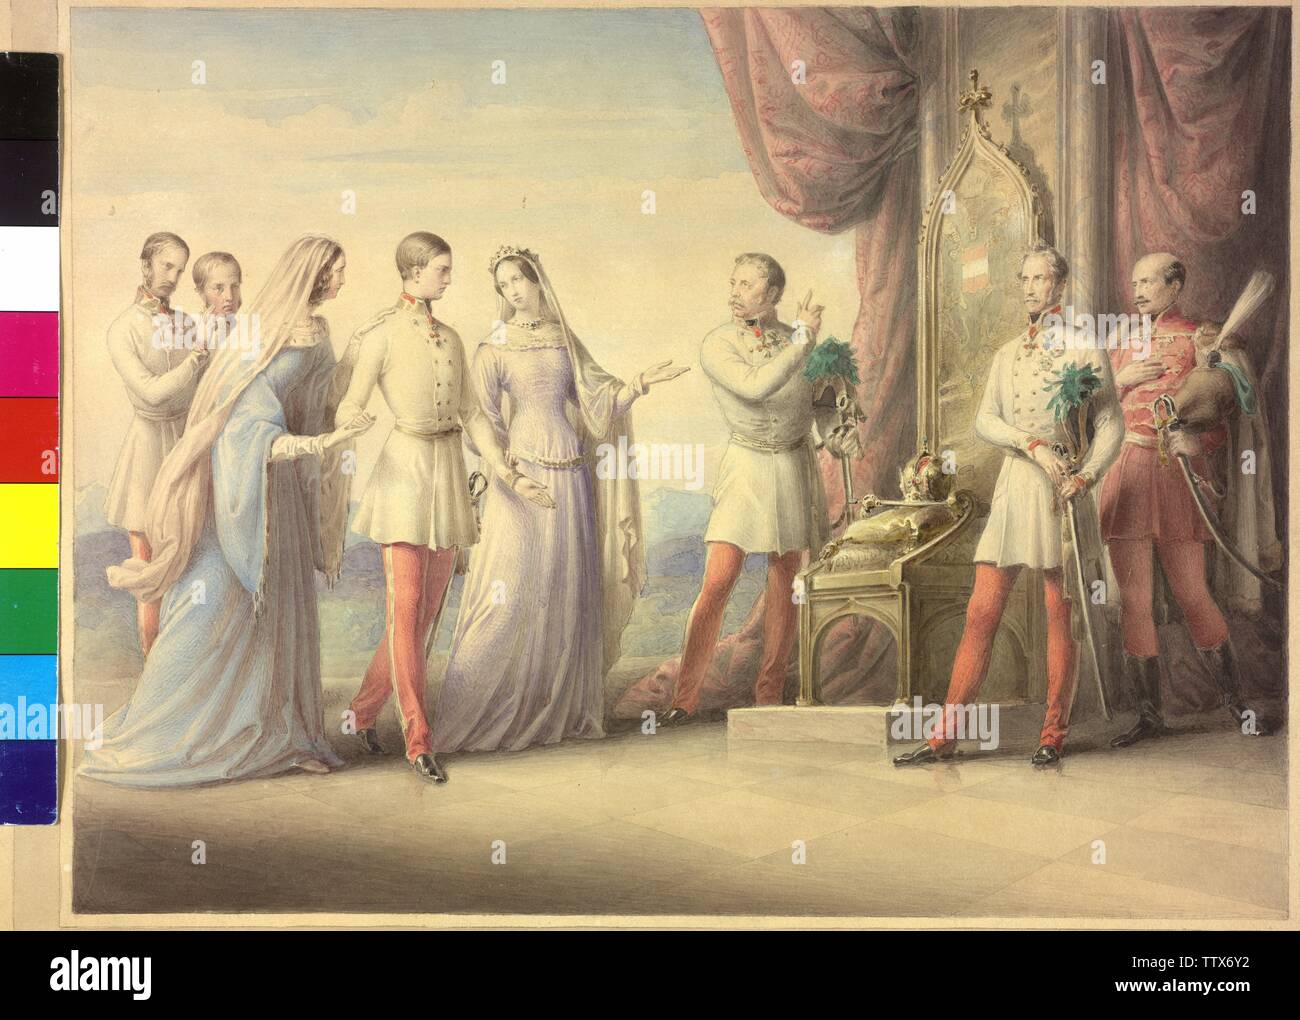 L'impératrice Maria Anna et l'archiduchesse Sophie d'escorter l'empereur François-Joseph sur le trône, l'impératrice Maria Anna (née princesse de Savoyen-Sardinien) et l'archiduchesse Sophie (princesse de Bavière) escortant le jeune François-Joseph, Empereur d'Autriche sur le trône avec l'état, de l'Alfred Prince de Windisch-Graetz, comte Joseph Radetzky et Joseph comte Jellacic convoquer. permanent à l'arrière-plan l'empereur Ferdinand et le père François-Joseph, l'archiduc François-Charles unhistorical caractérisation allégorique sur l'accession au trône sur 2.12.1848. Additional-Rights Clearance-Info,--Not-Available Banque D'Images